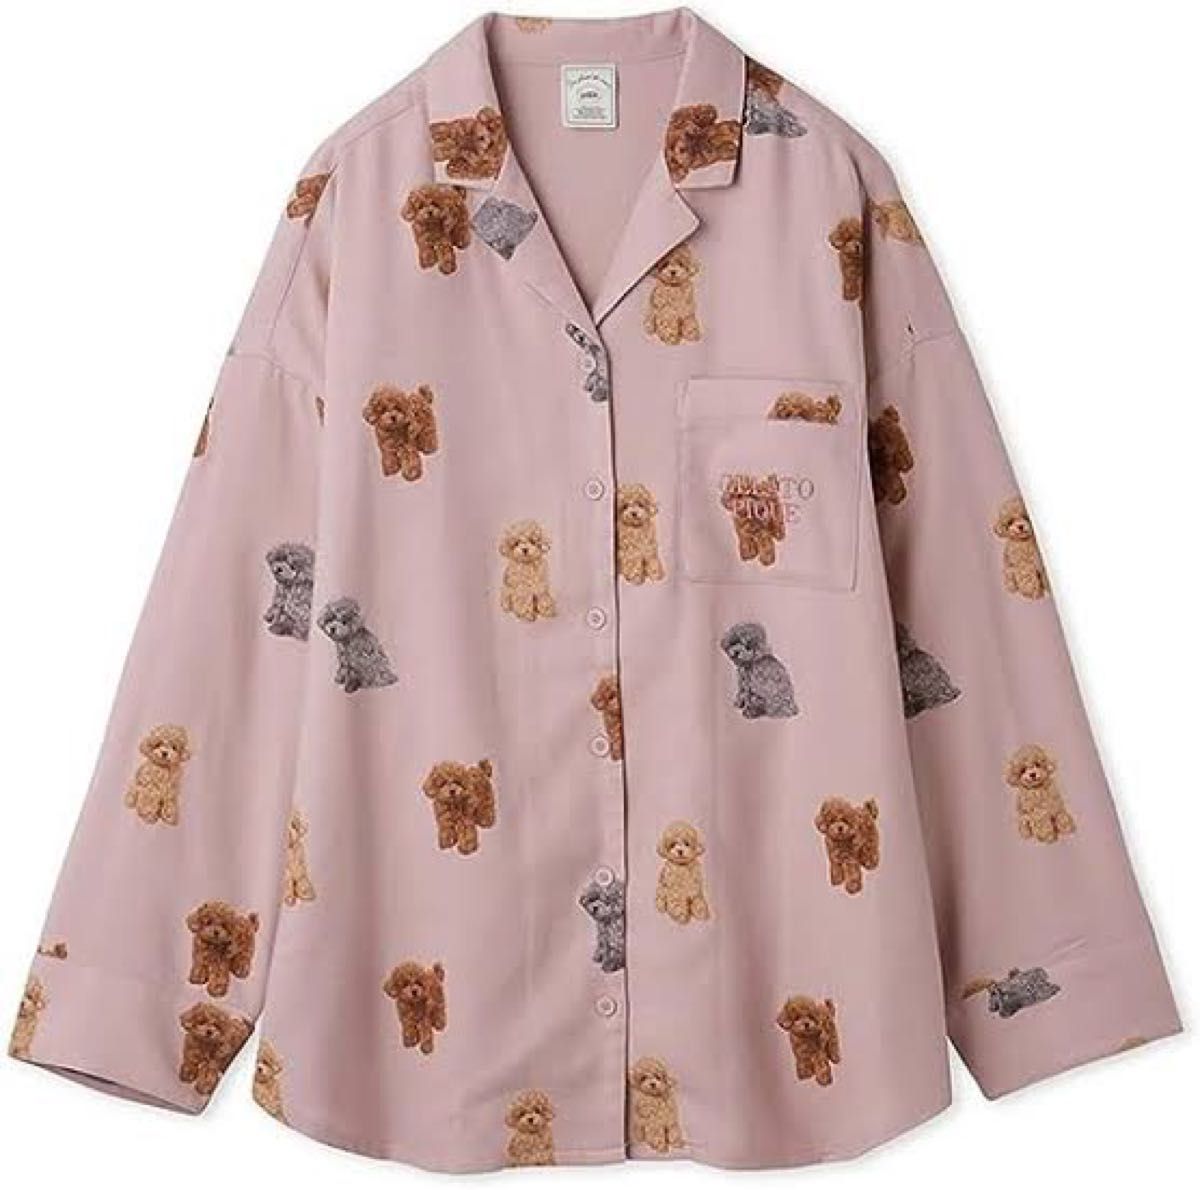 ジェラートピケ トイプードル ネルシャツ パジャマ ルームウェア ピンク